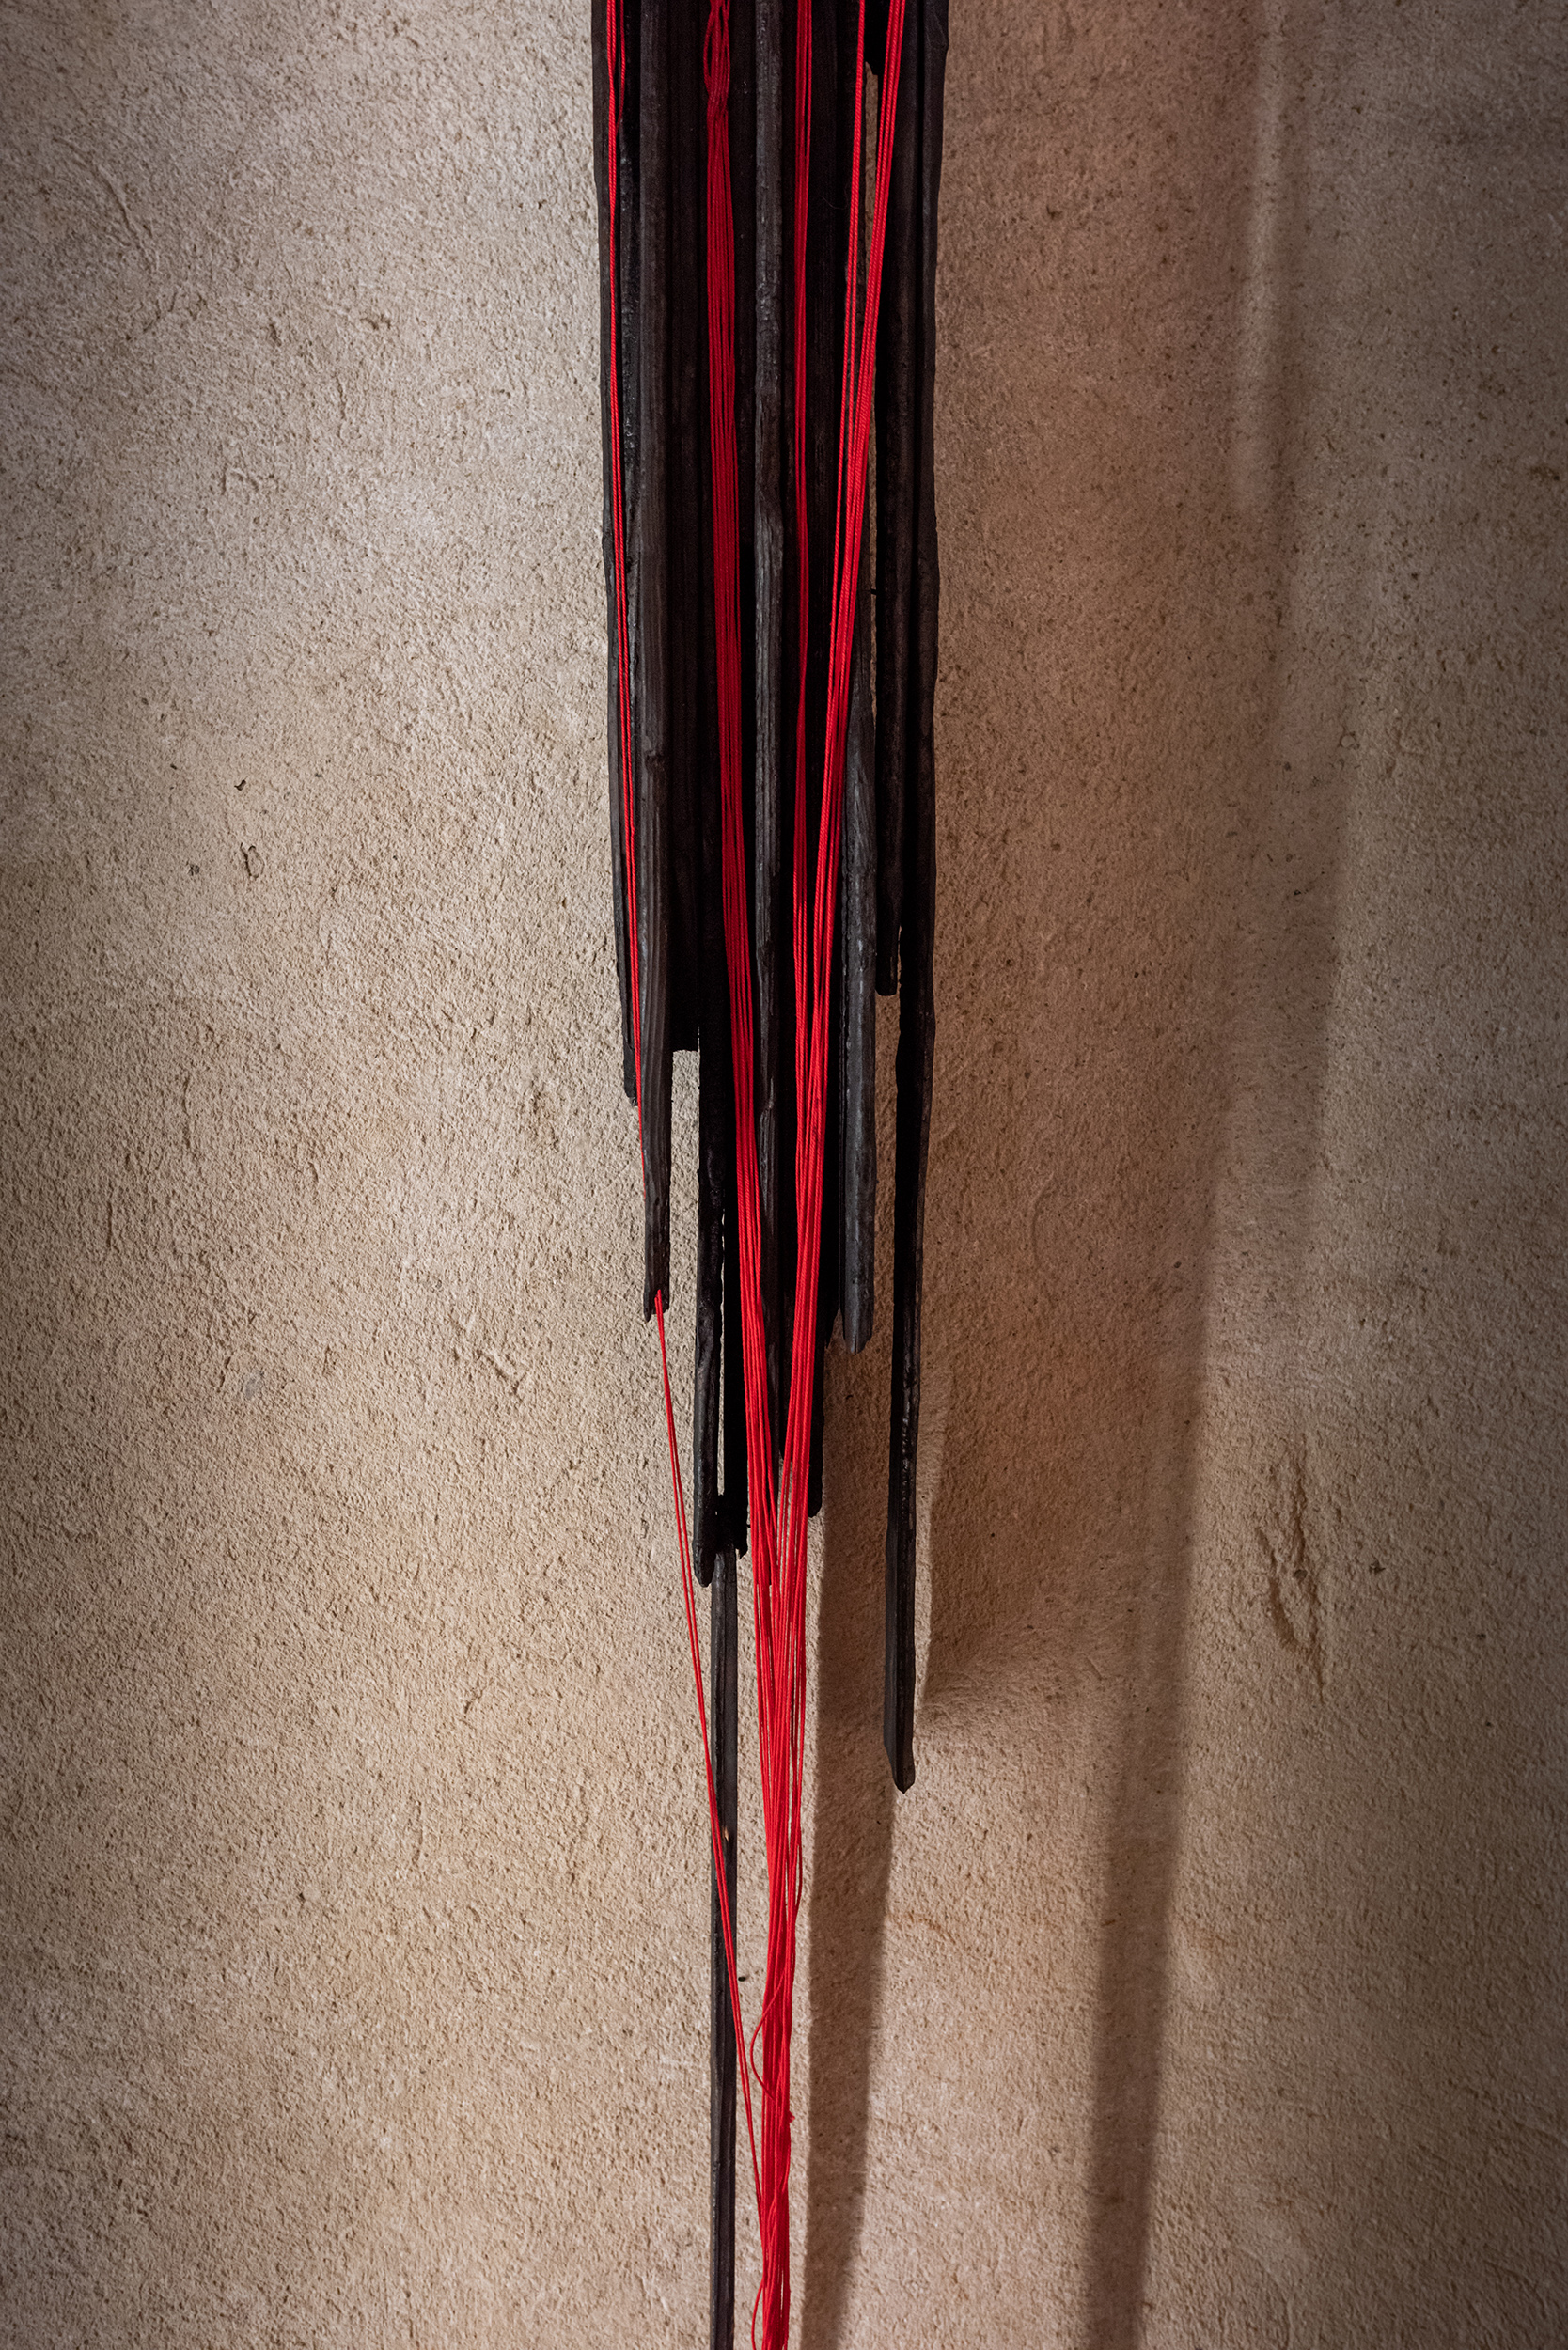 scultura di legno carbonizzato e fili di cotone rosso